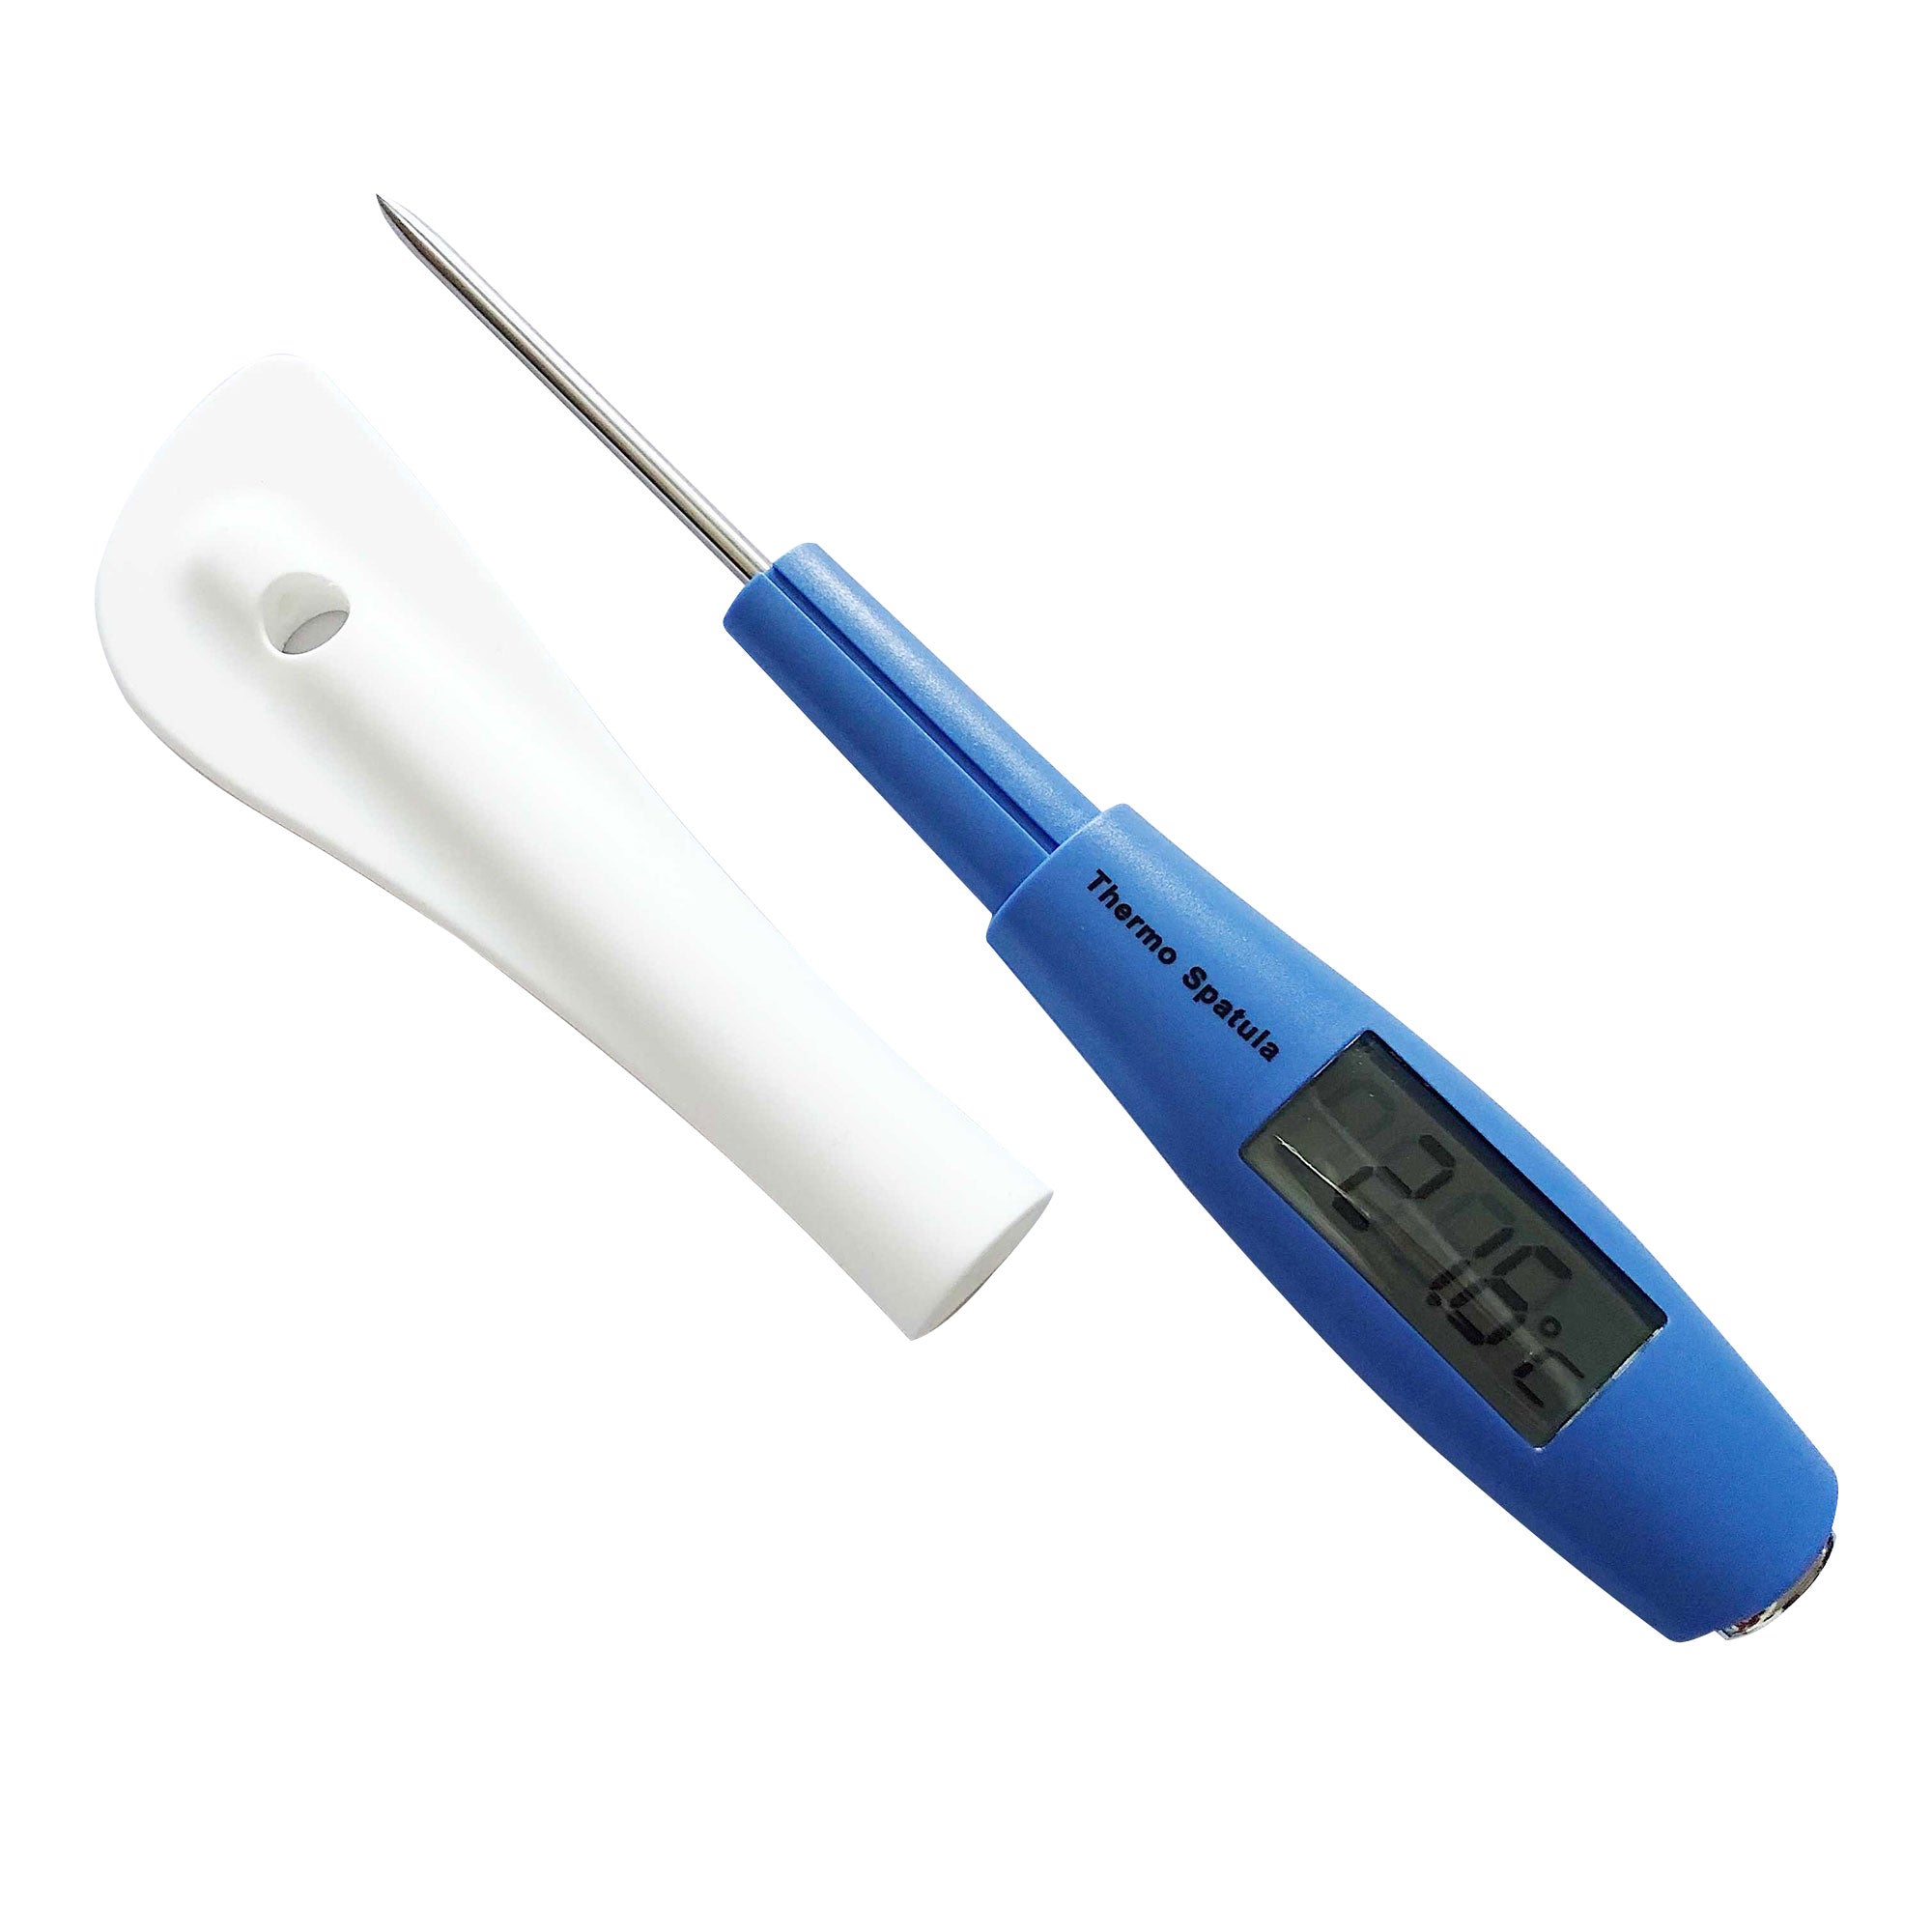 Spatula Thermometer